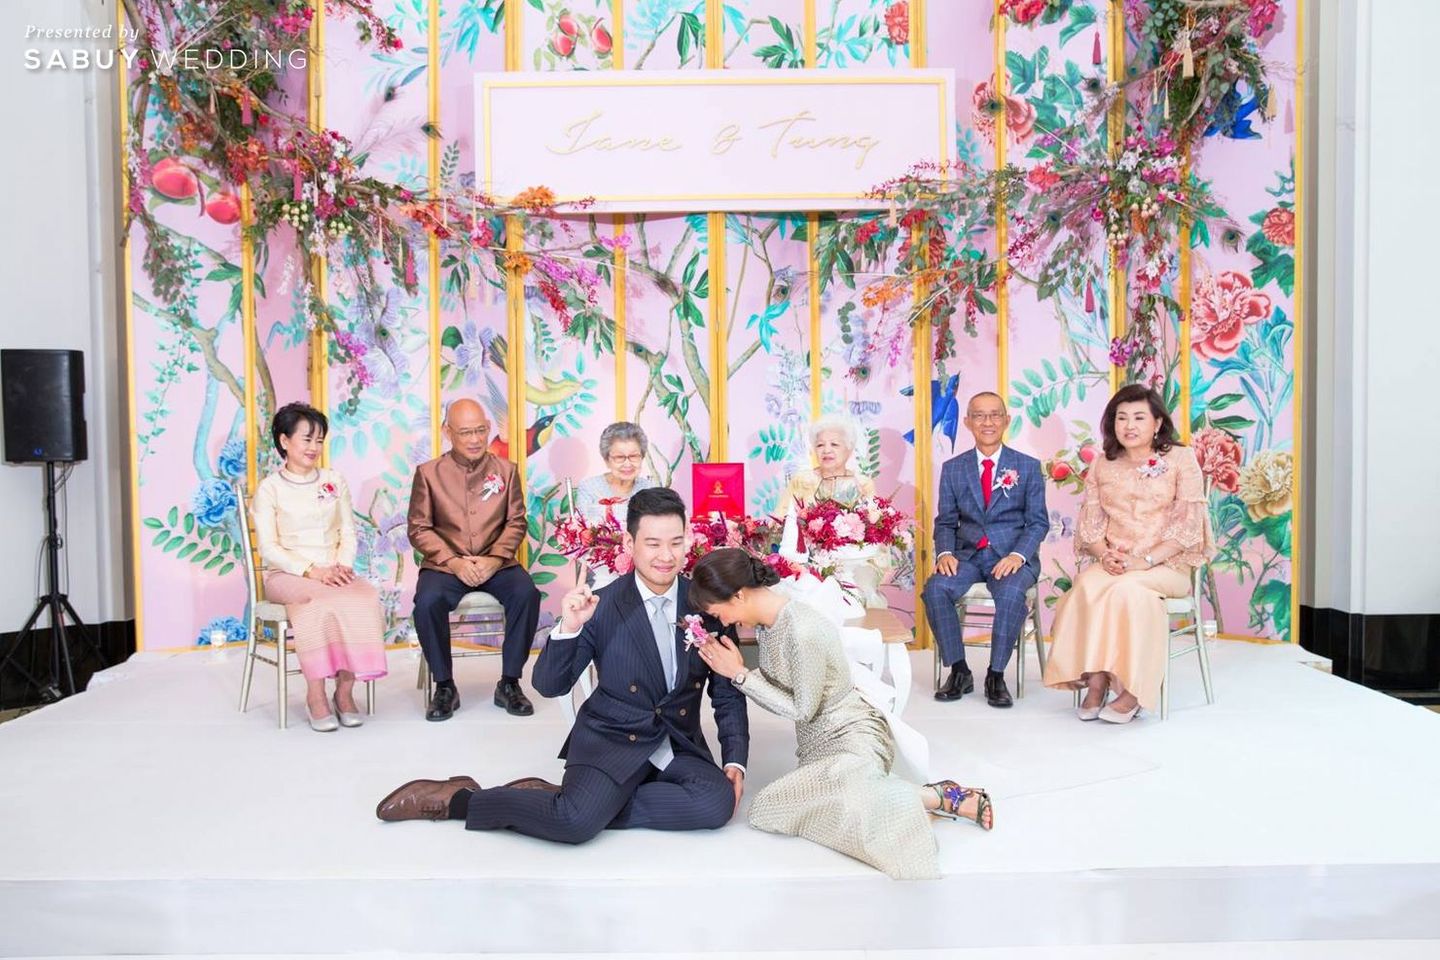 พิธีแต่งงาน,พิธีหมั้น,เวทีงานแต่ง,บ่าวสาว,ชุดไทยเจ้าสาว,ตกแต่งงานแต่ง รีวิวงานแต่งแซ่บบาดใจ สไตล์เจ้าสาวแฟชั่นนิสต้า @The Peninsula Bangkok